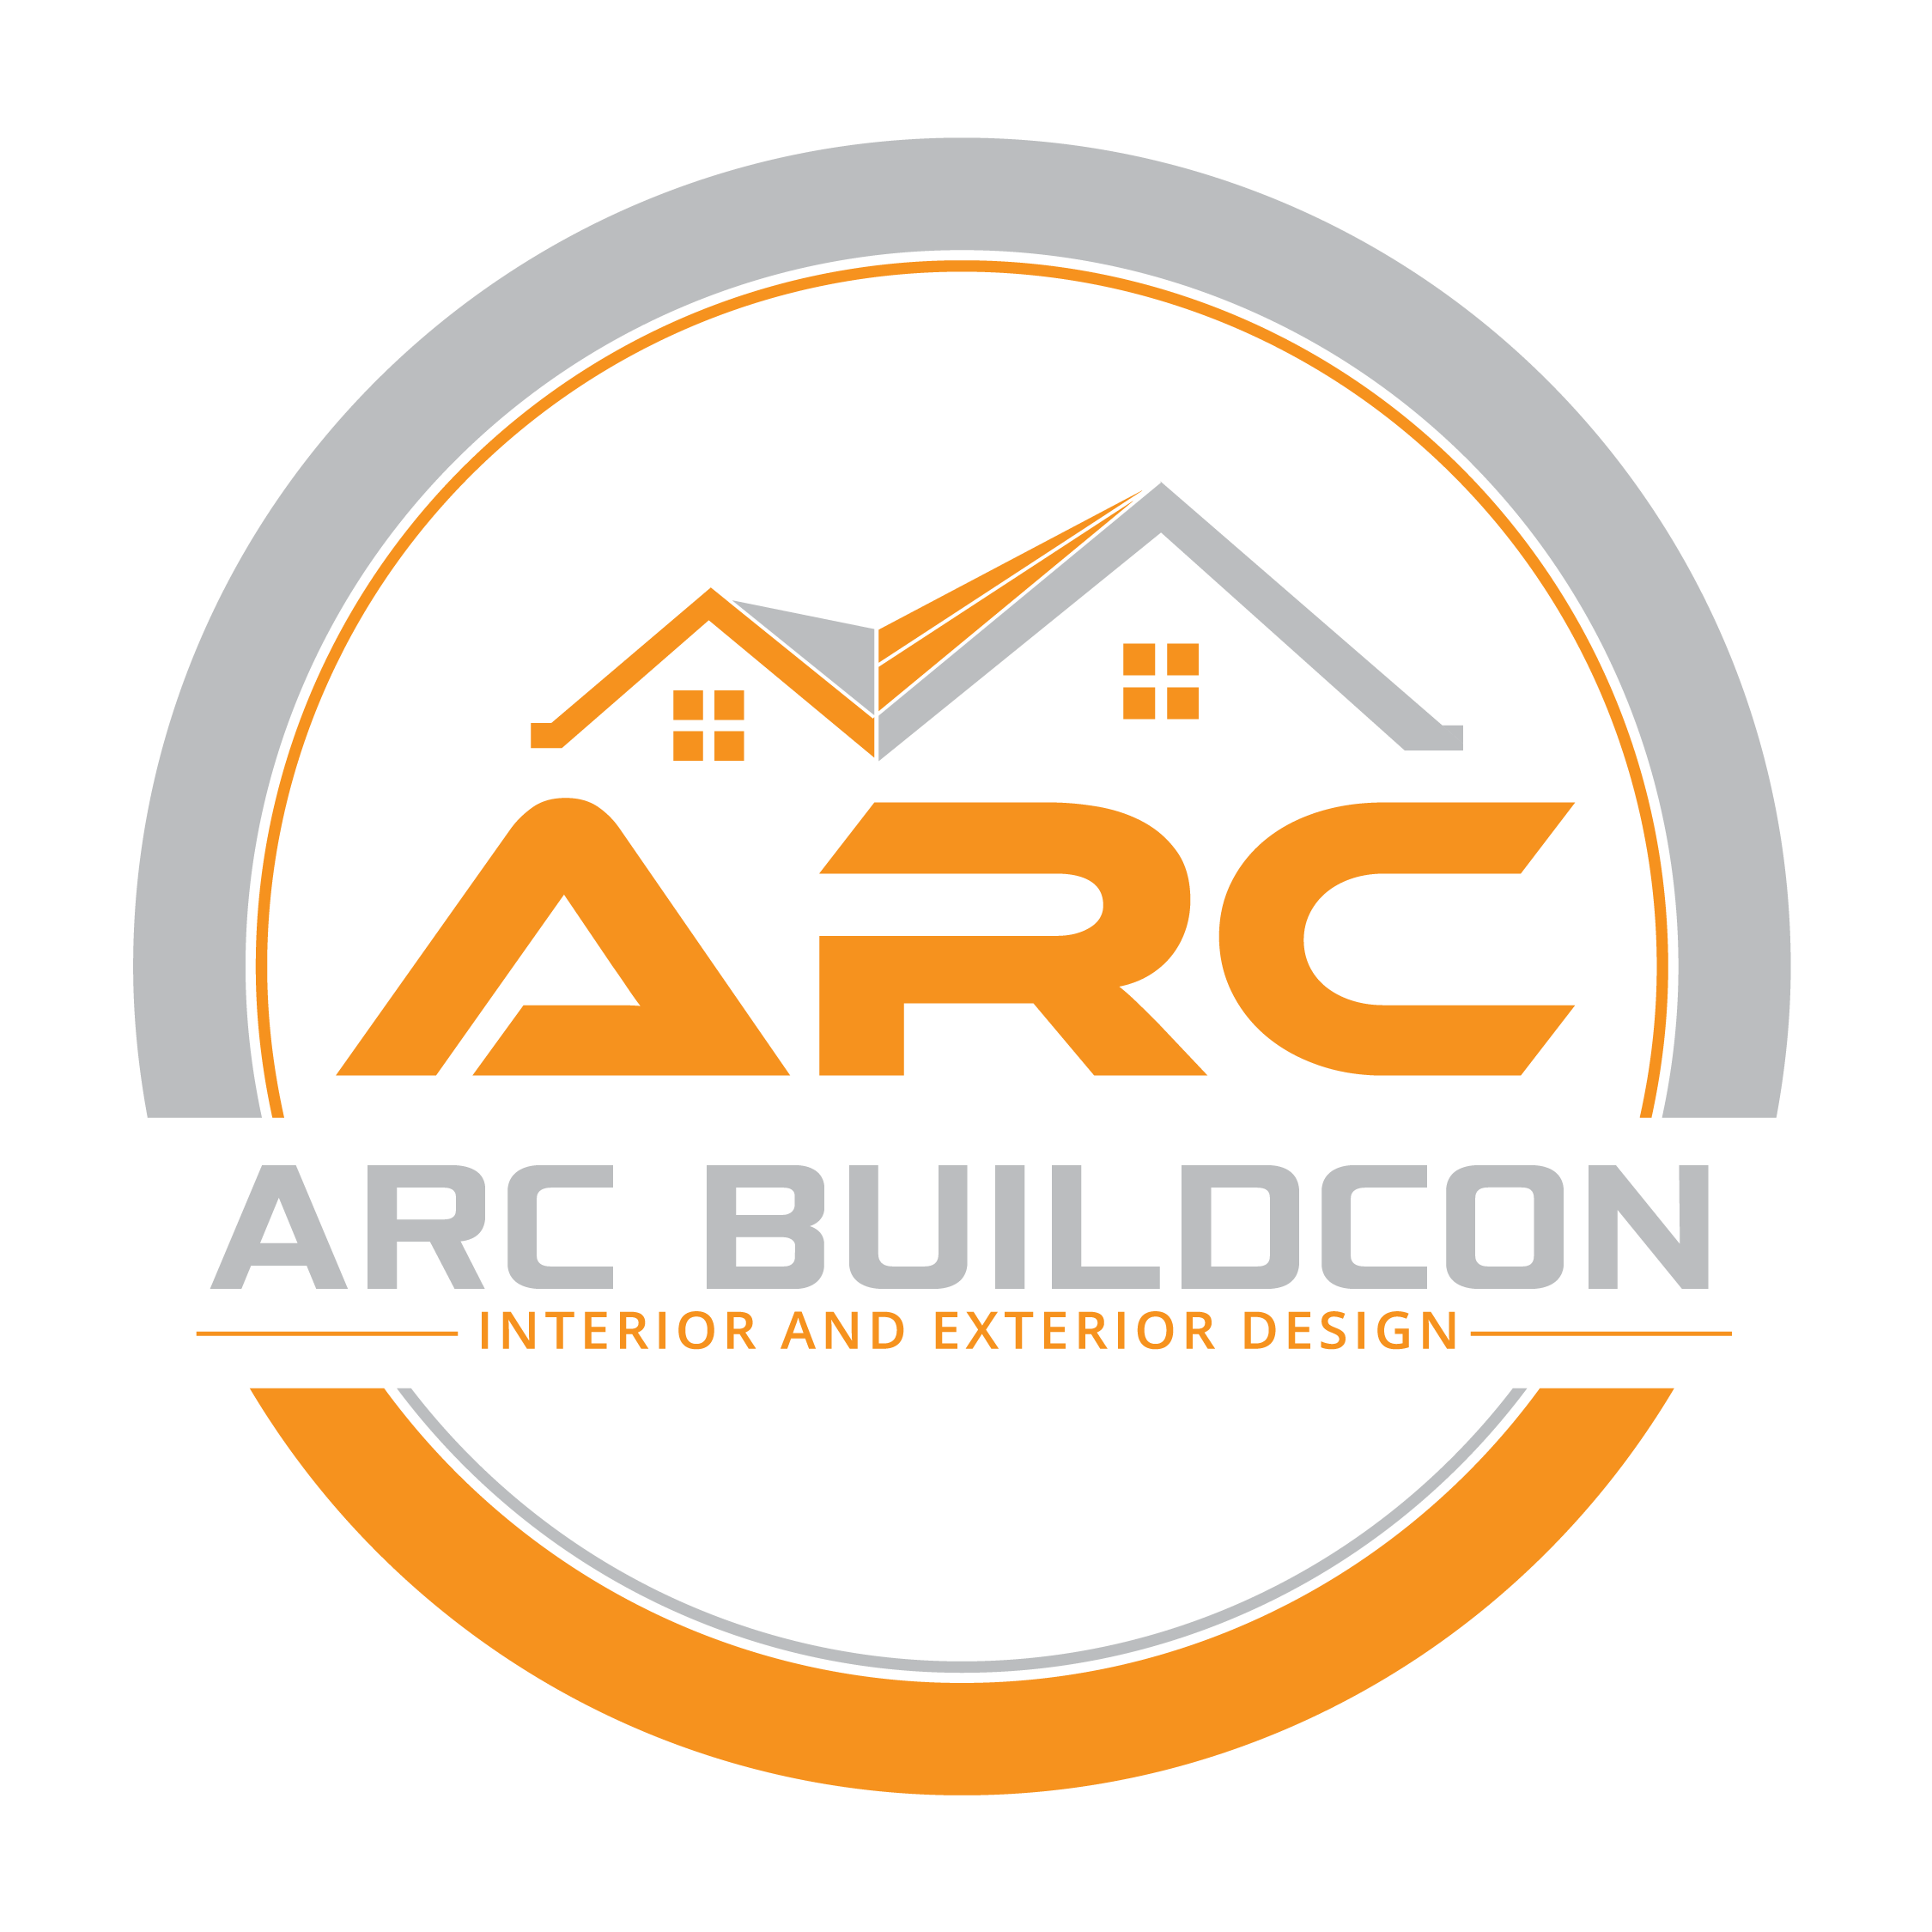 Arcbuildcon